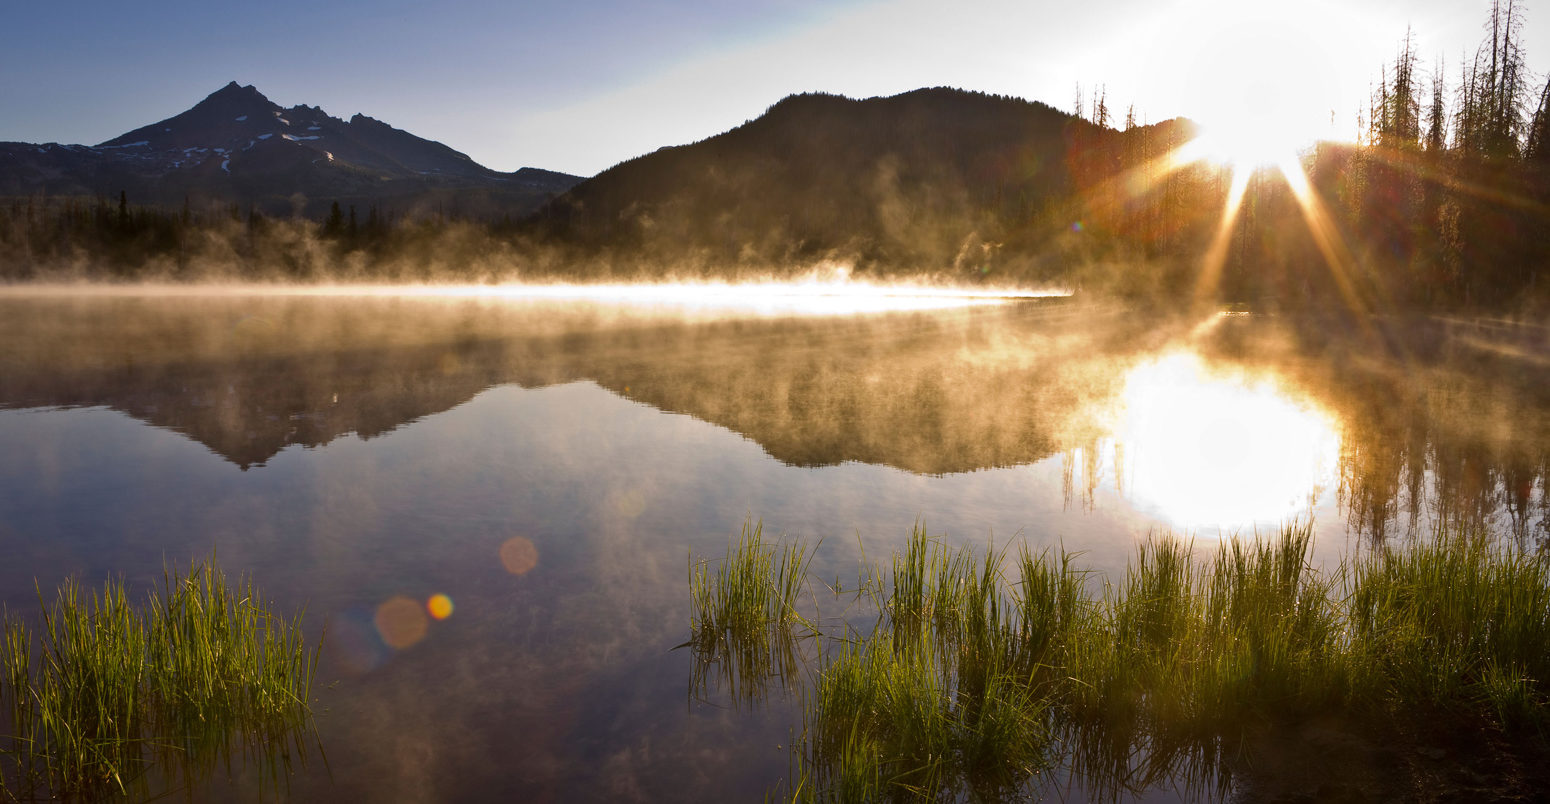 Morning mist at sunrise in Sparks Lake, Central Oregon